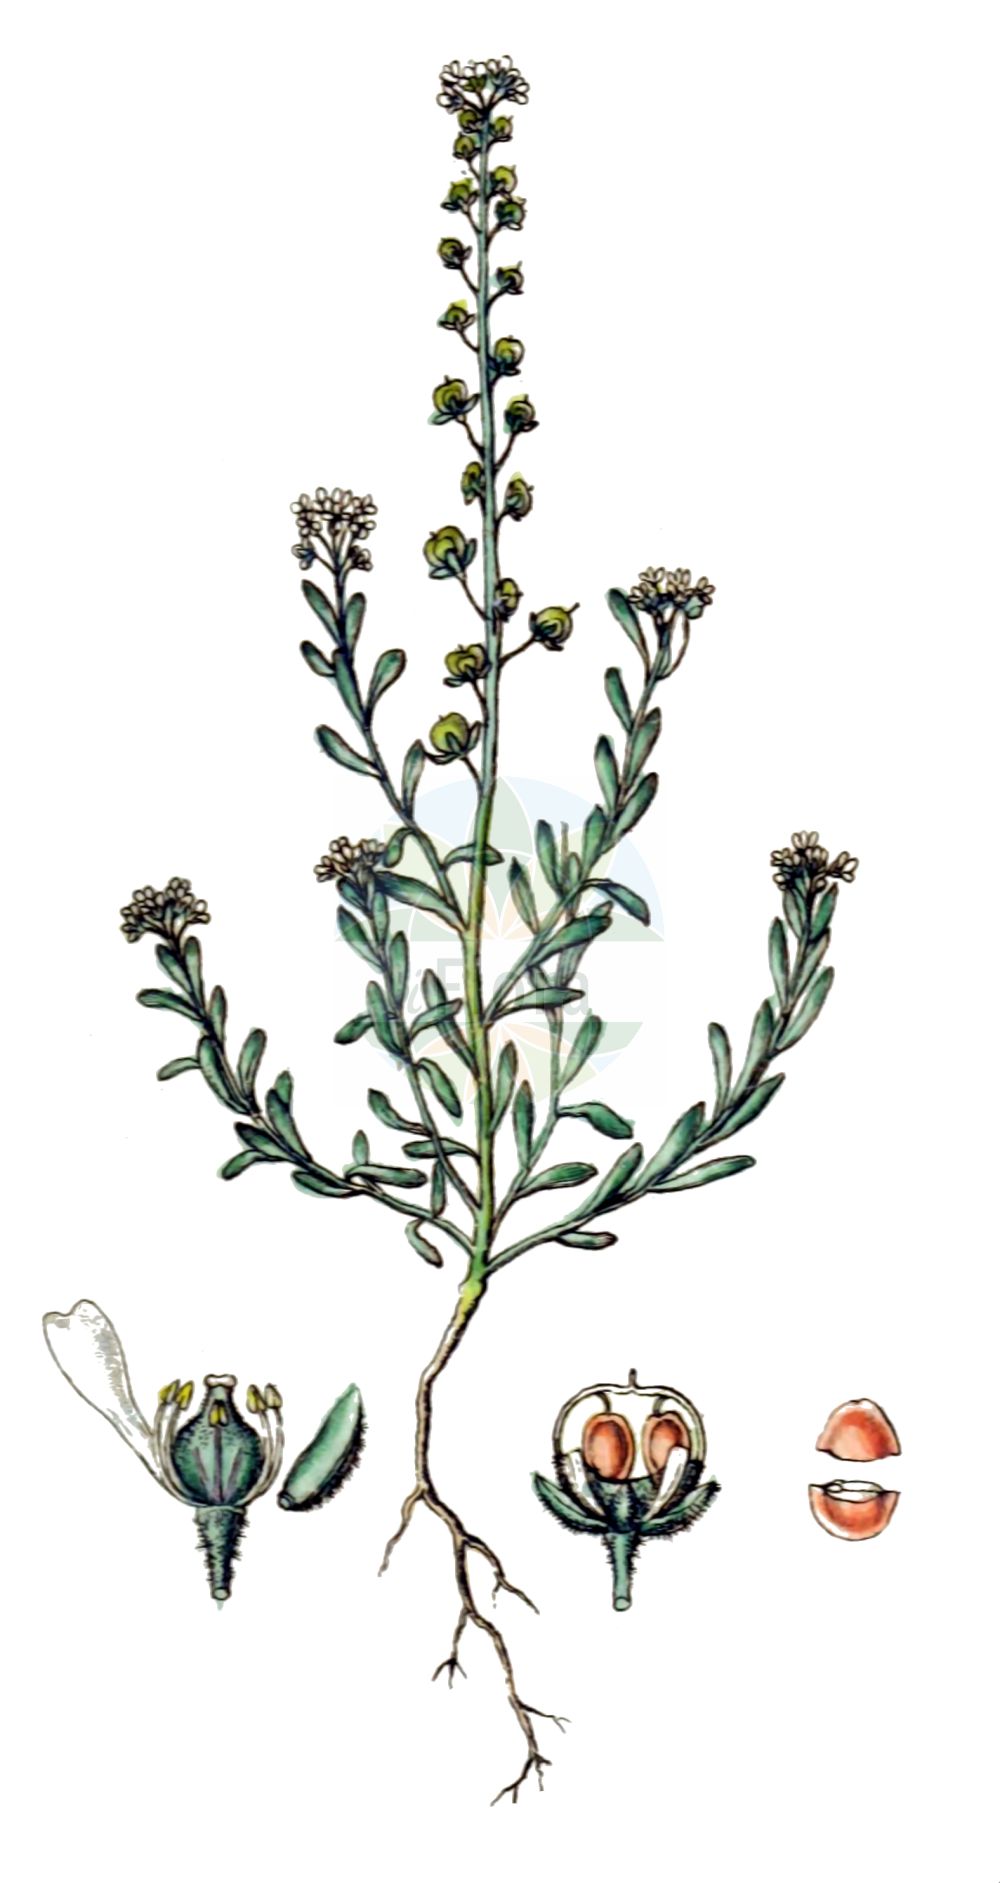 Historische Abbildung von Alyssum alyssoides (Kelch-Steinkraut - Small Alison). Das Bild zeigt Blatt, Bluete, Frucht und Same. ---- Historical Drawing of Alyssum alyssoides (Kelch-Steinkraut - Small Alison). The image is showing leaf, flower, fruit and seed.(Alyssum alyssoides,Kelch-Steinkraut,Small Alison,Adyseton alyssoides,Alyssum alsinifolium,Alyssum alyssoides,Alyssum arvaticum,Alyssum calycinum,Alyssum campestre,Alyssum conglobatum,Alyssum erraticum,Alyssum fontqueri,Alyssum micropetalum,Alyssum minus,Alyssum phymatocarpum,Alyssum polyodon,Alyssum ruderale,Alyssum sabulosum,Alyssum schlosseri,Alyssum sublineare,Alyssum vagum,Clypeola alyssoides,Clypeola campestris,Psilonema calycinum,Psilonema calycinum var. depressum,Kelch-Steinkraut,Small Alison,Pale Alison,Pale Madwort,Small Alyssum,Yellow Alyssum,Alyssum,Steinkraut,Alison,Brassicaceae,Kreuzblütler,Cabbage family,Blatt,Bluete,Frucht,Same,leaf,flower,fruit,seed,Sturm (1796f))